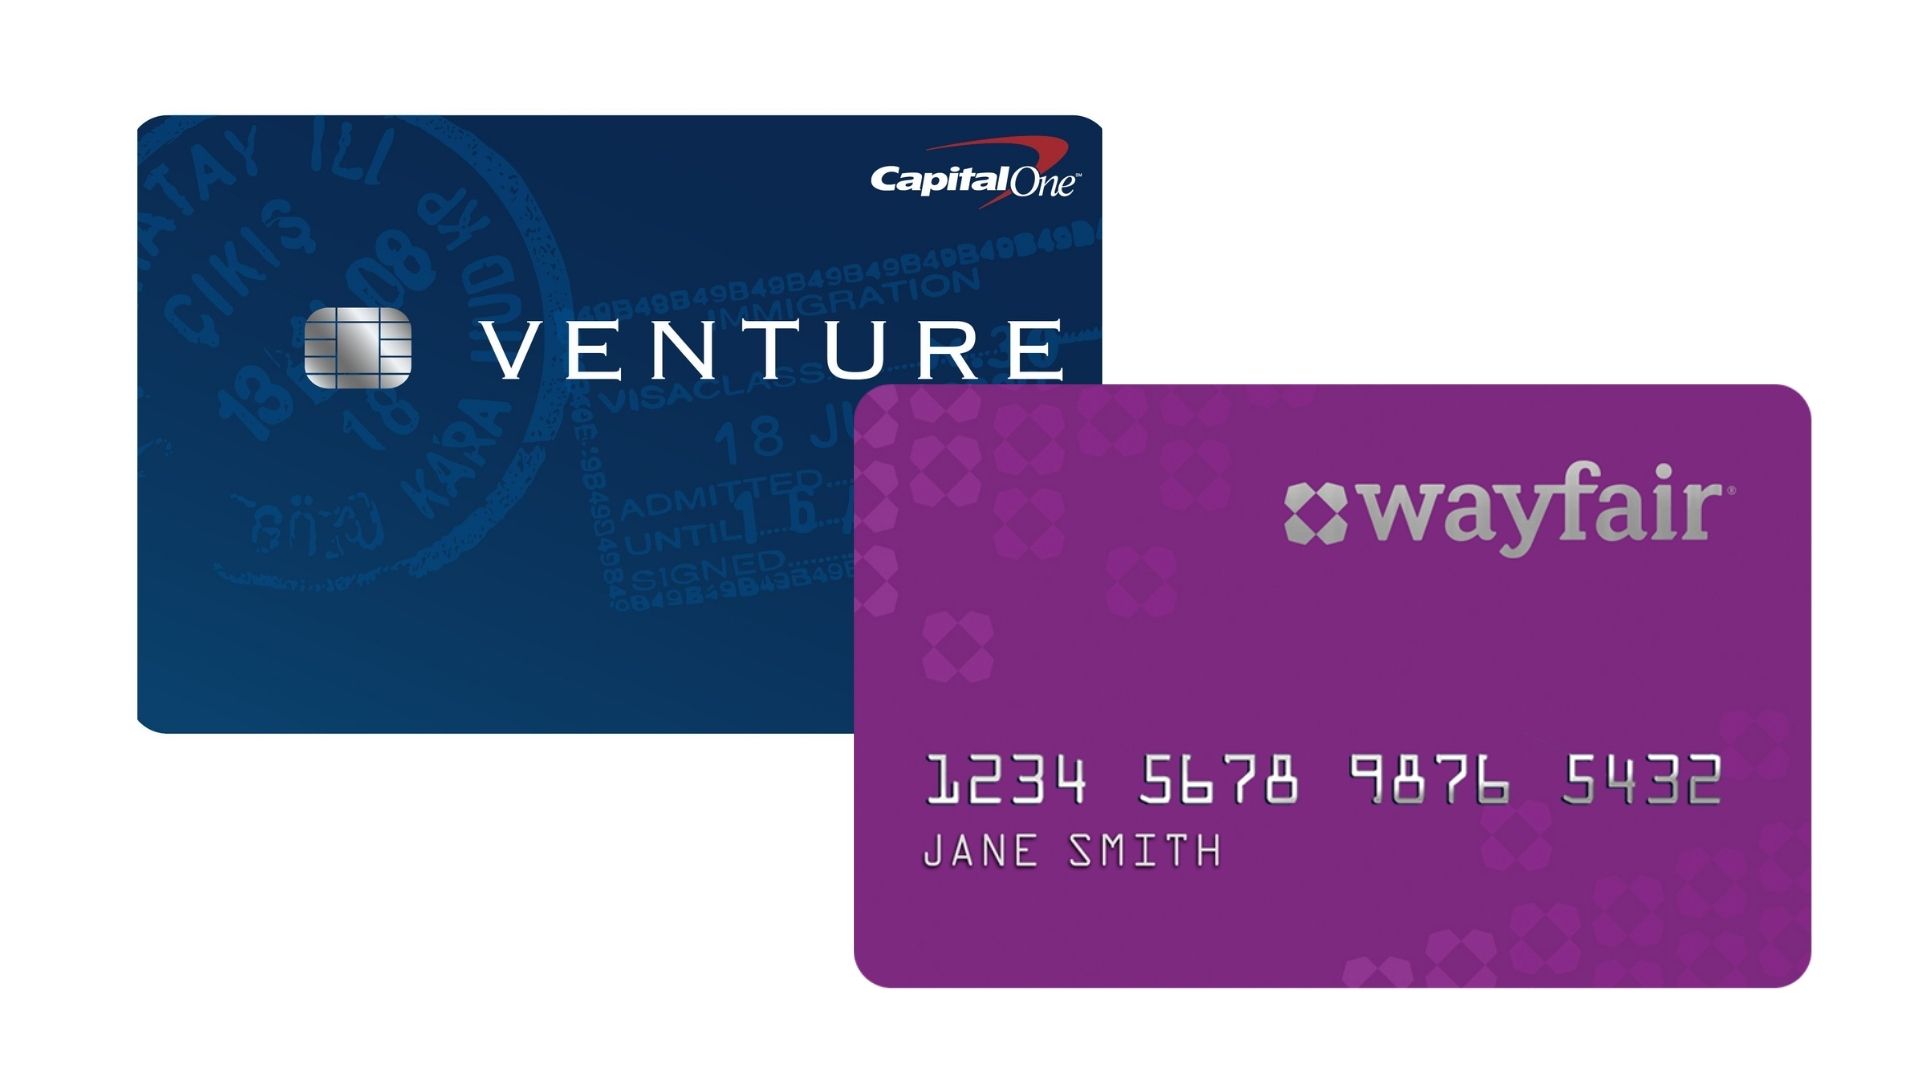 Cartão Venture Rewards ou cartão Wayfair. Fonte: Wayfair | Capital One.